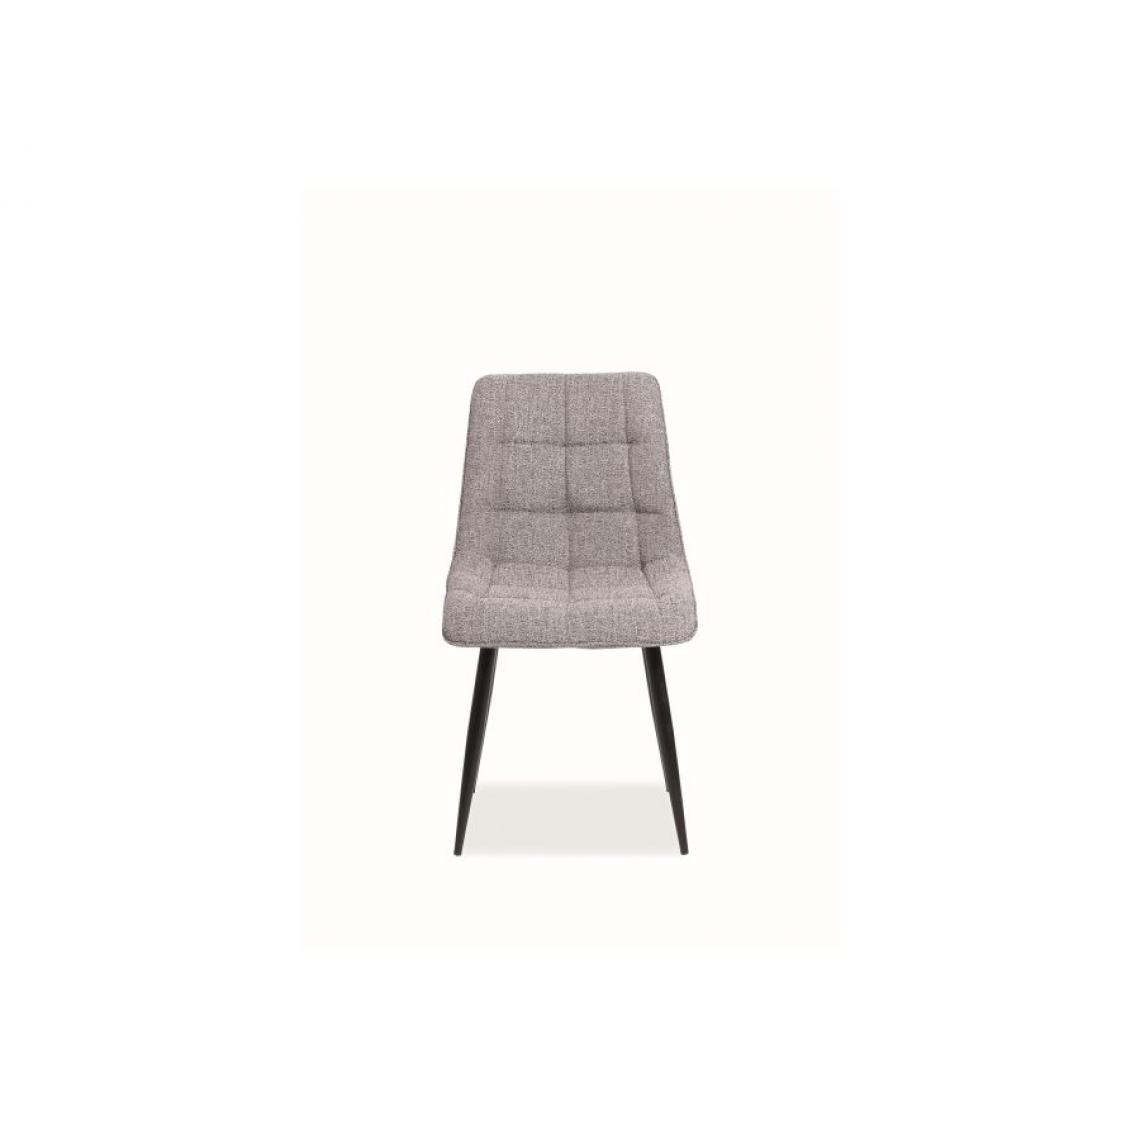 Hucoco - CHIM | Chaise matelassée avec pieds en métal | Dimensions 89x51x44 cm | Rembourrage en tissu | Pieds en métal - Gris - Chaises